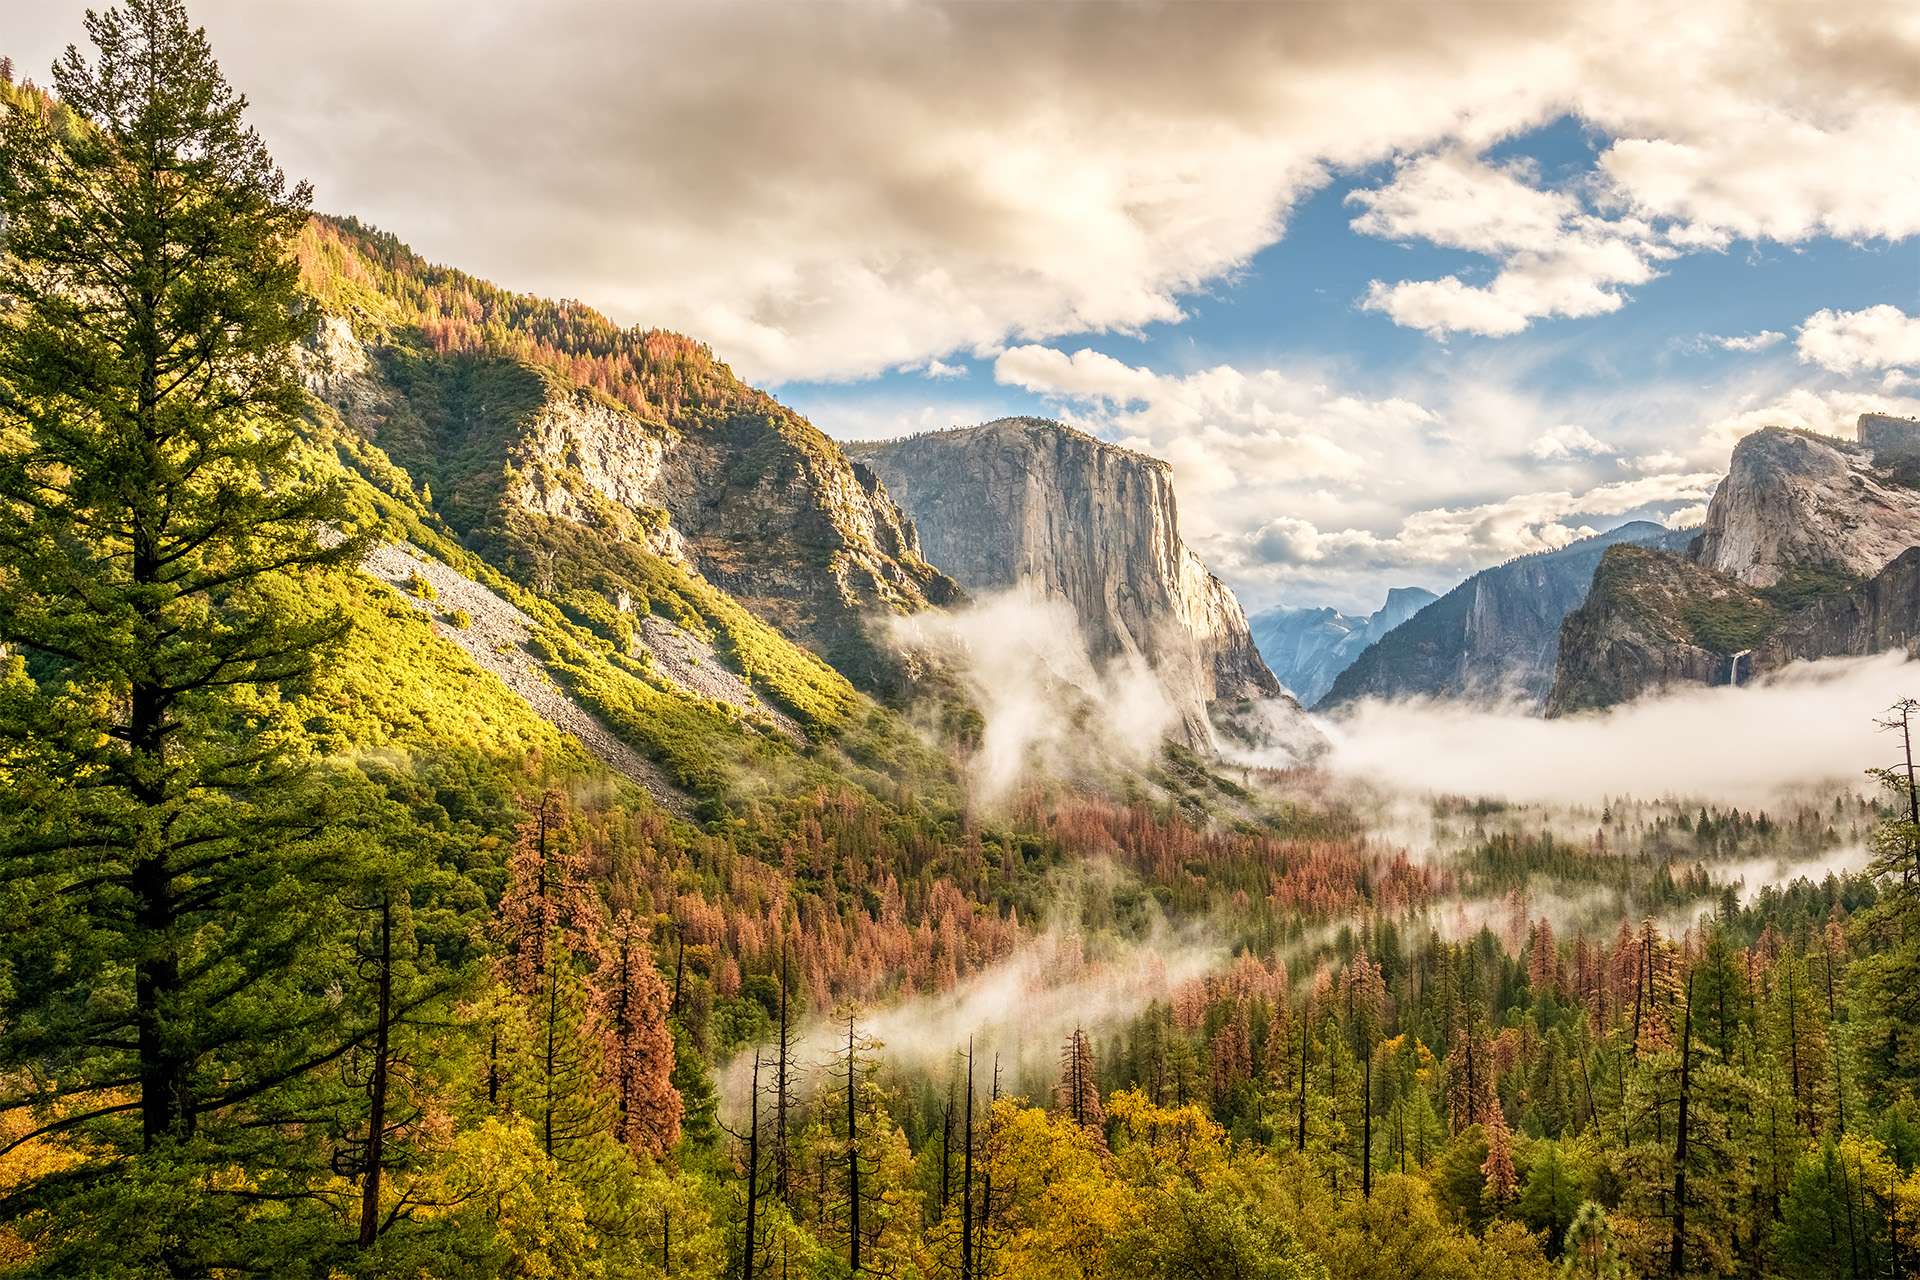 Valle del Parque Nacional Yosemite en la mañana nublada de otoño desde Tunnel View.  Nubes bajas yacían en el valle.  California, EE.UU